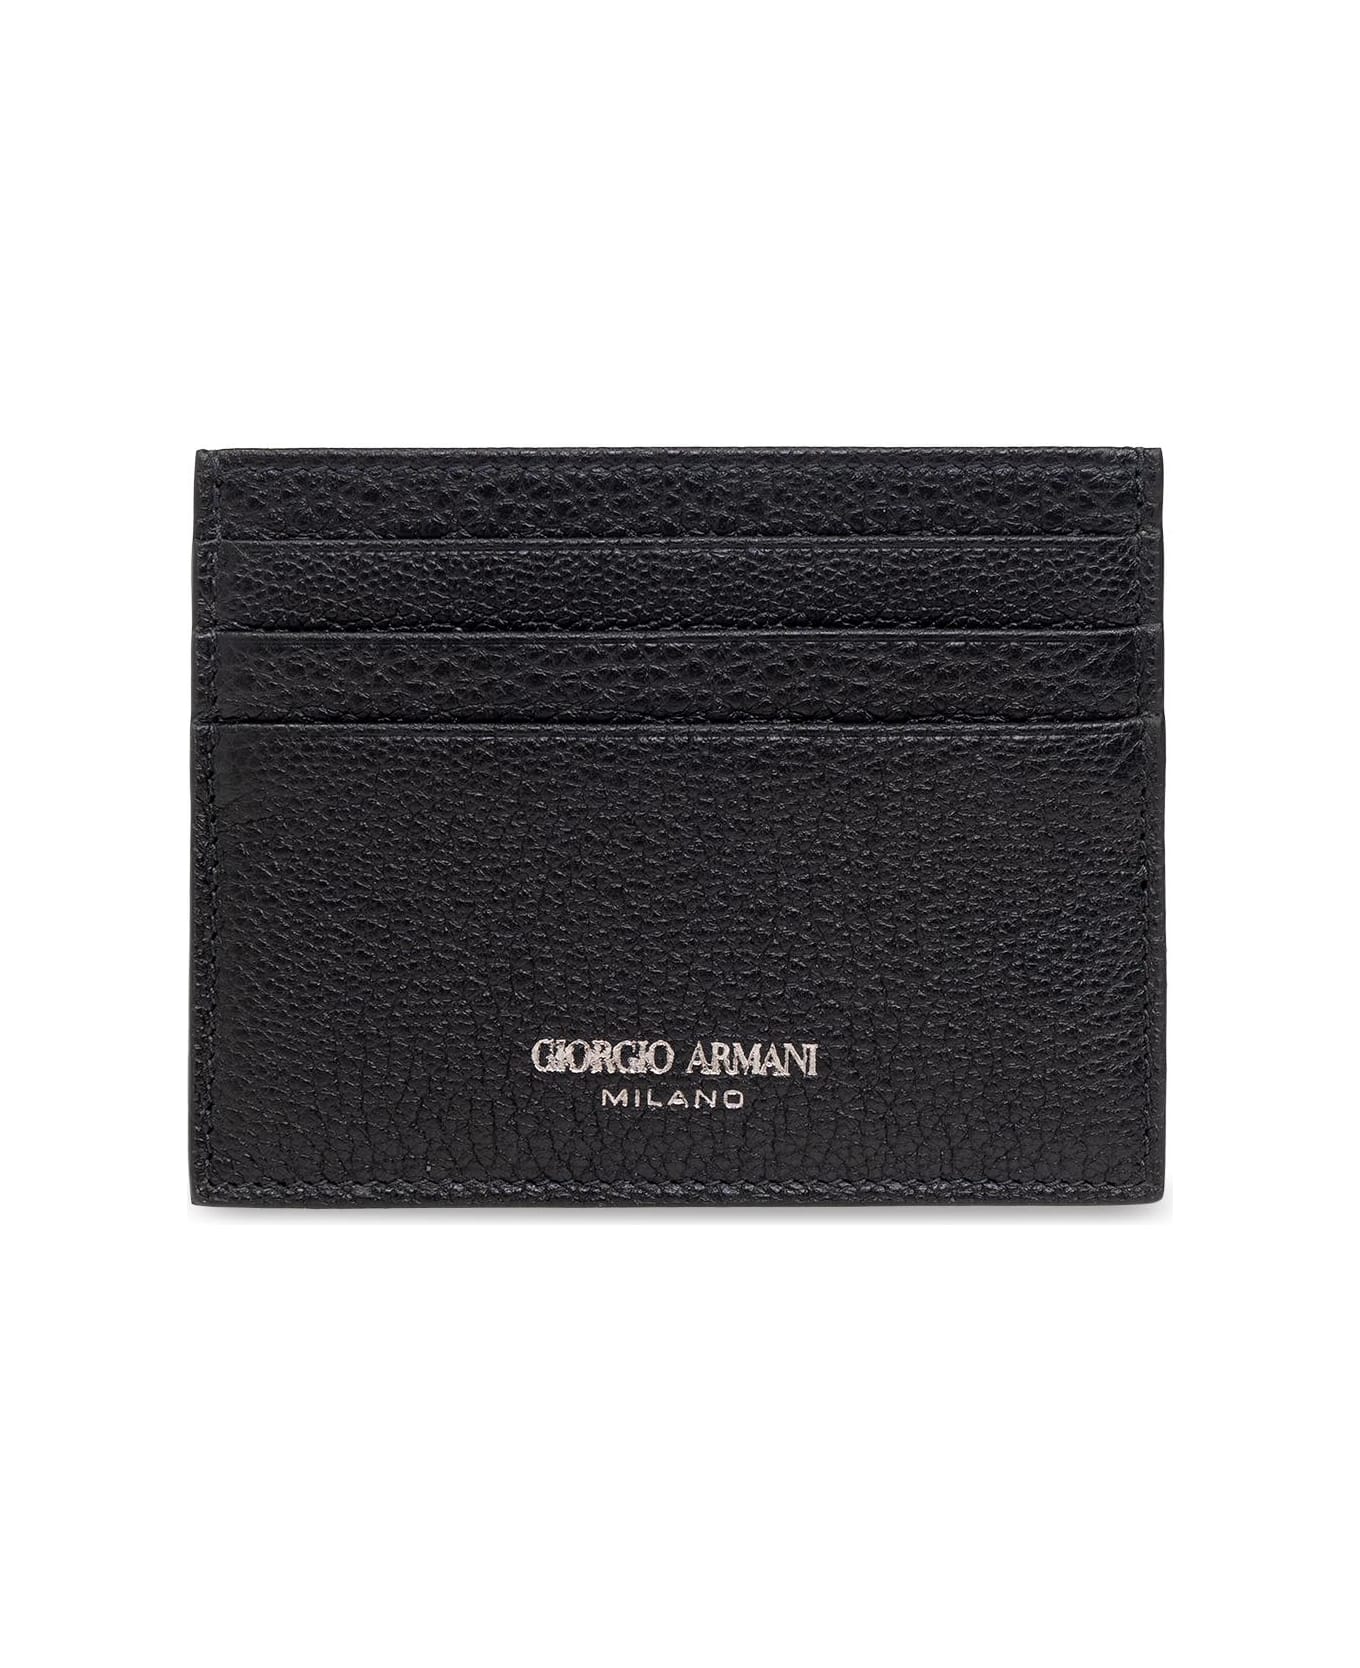 Giorgio Armani Card Holder - 80001